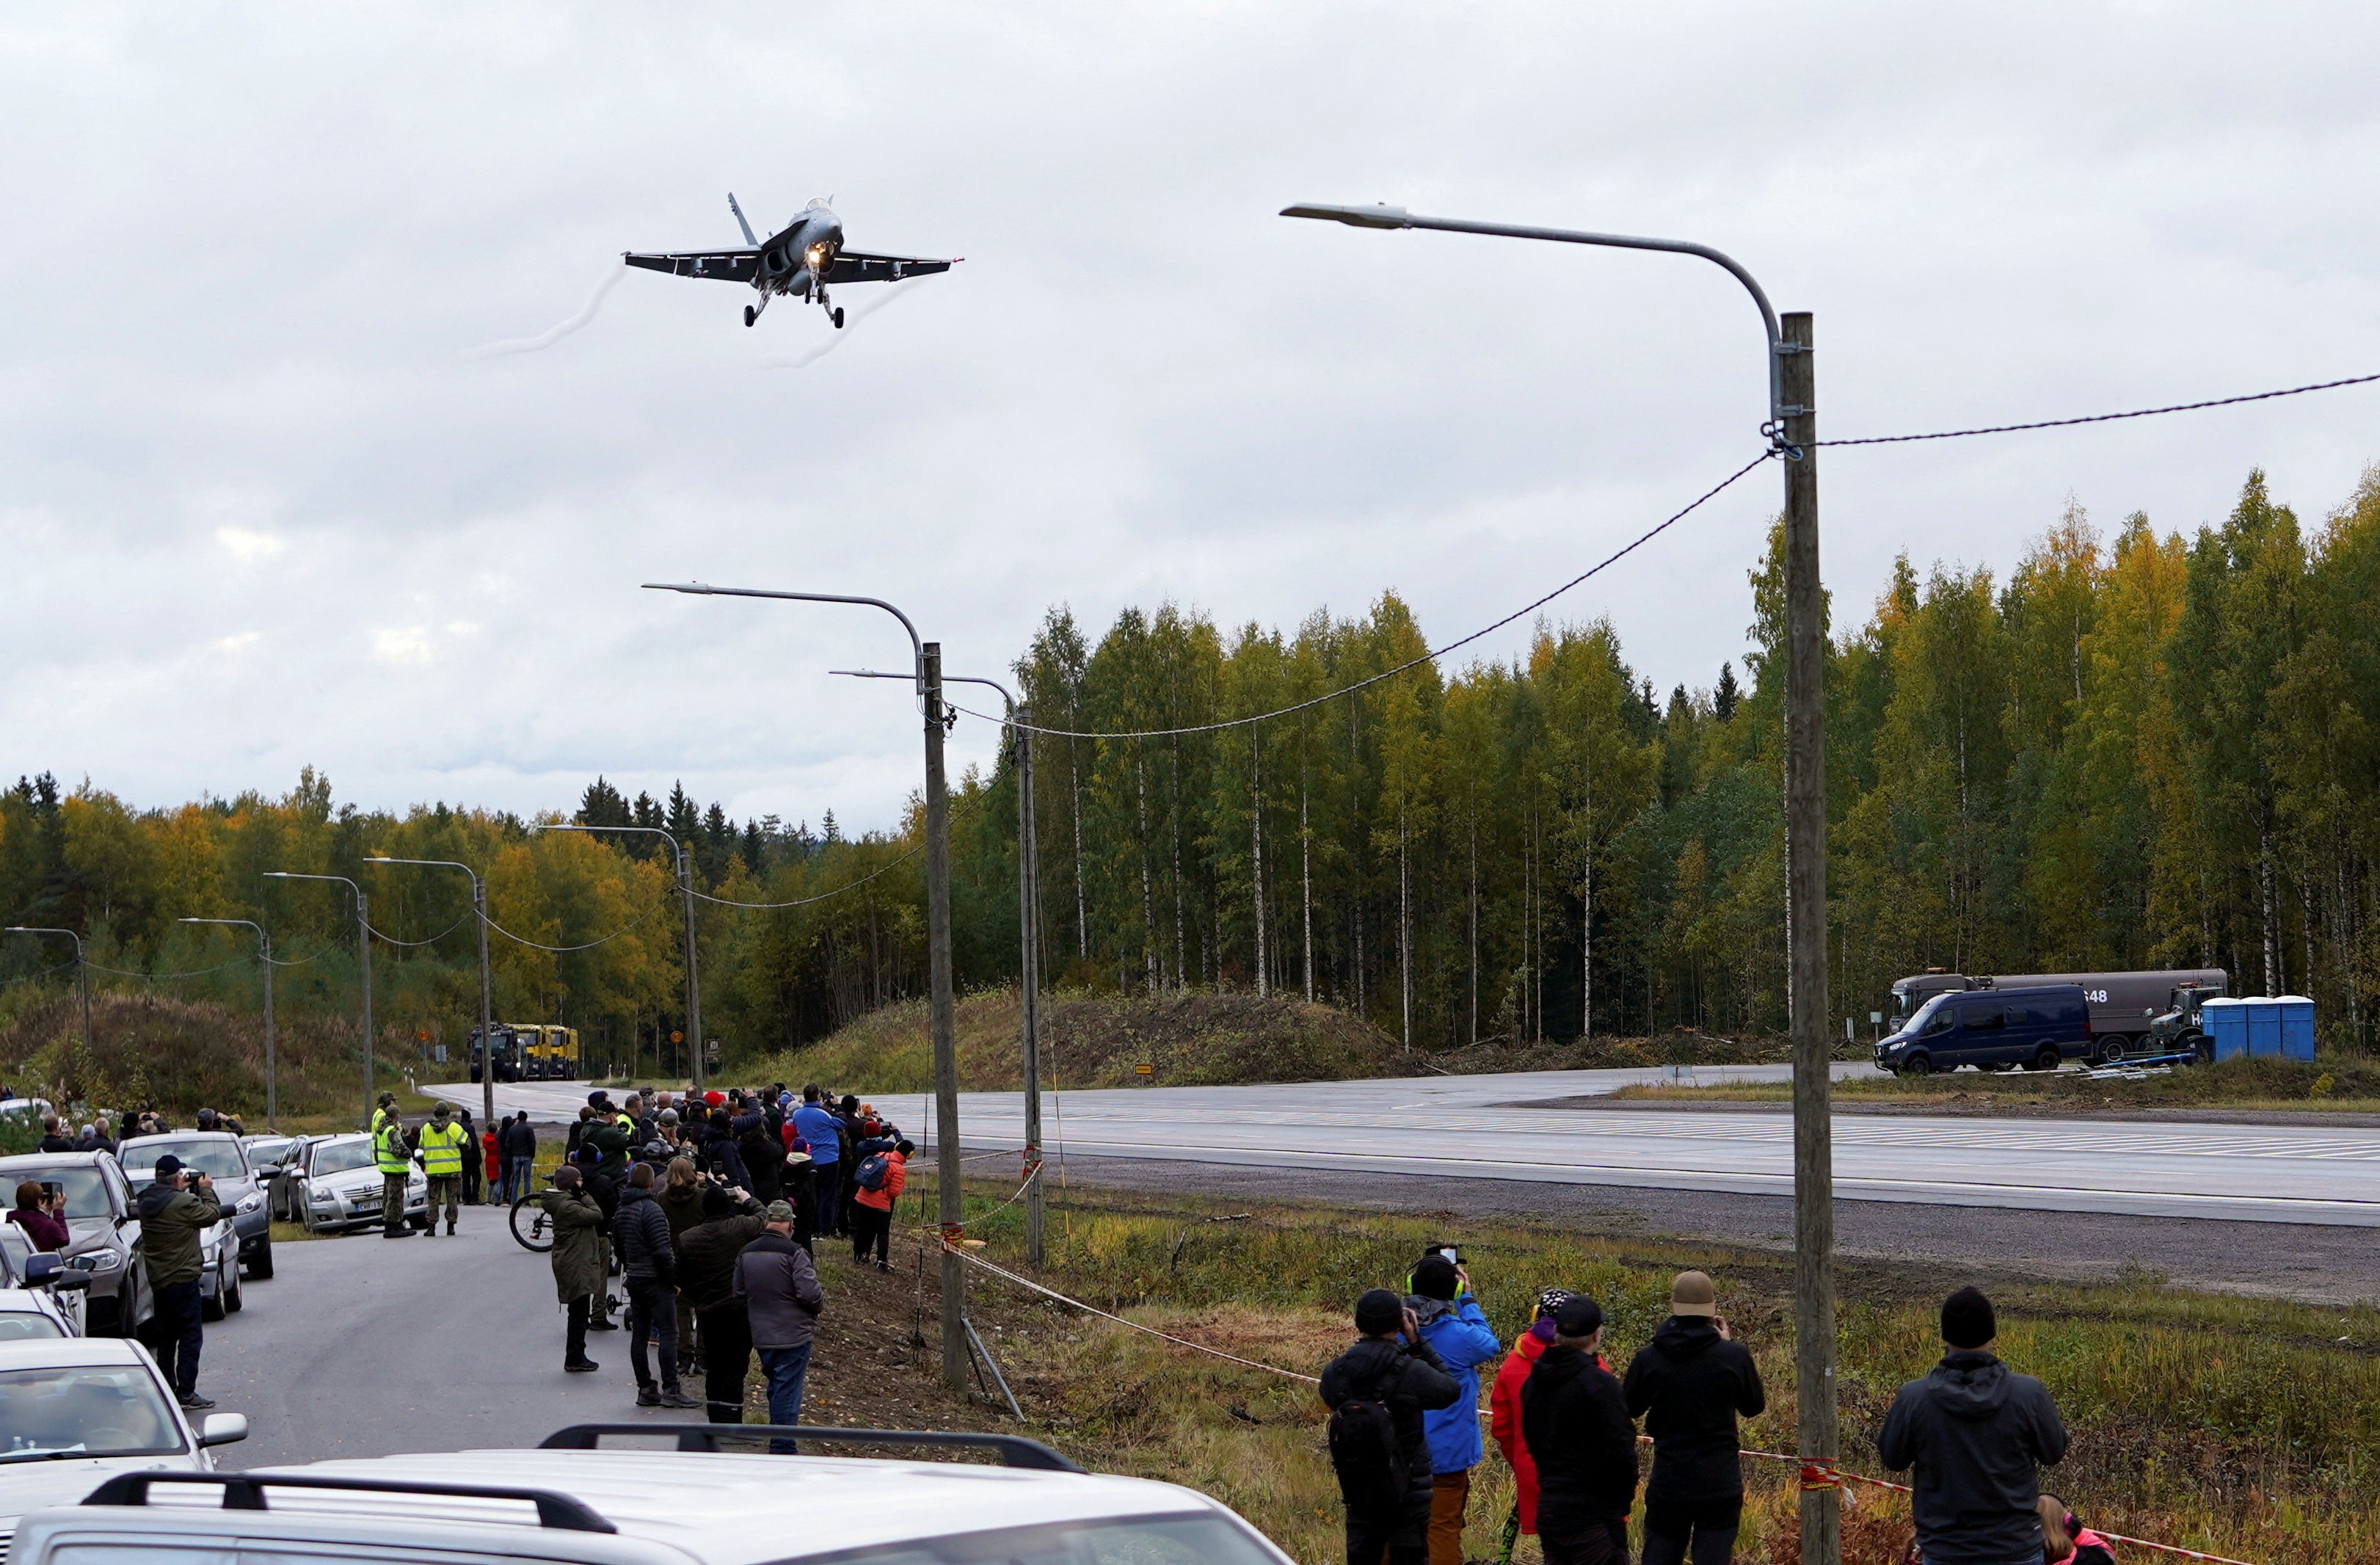 A F/A-18 Hornet fighter jet lands on a motorway in Joutsa, Finland